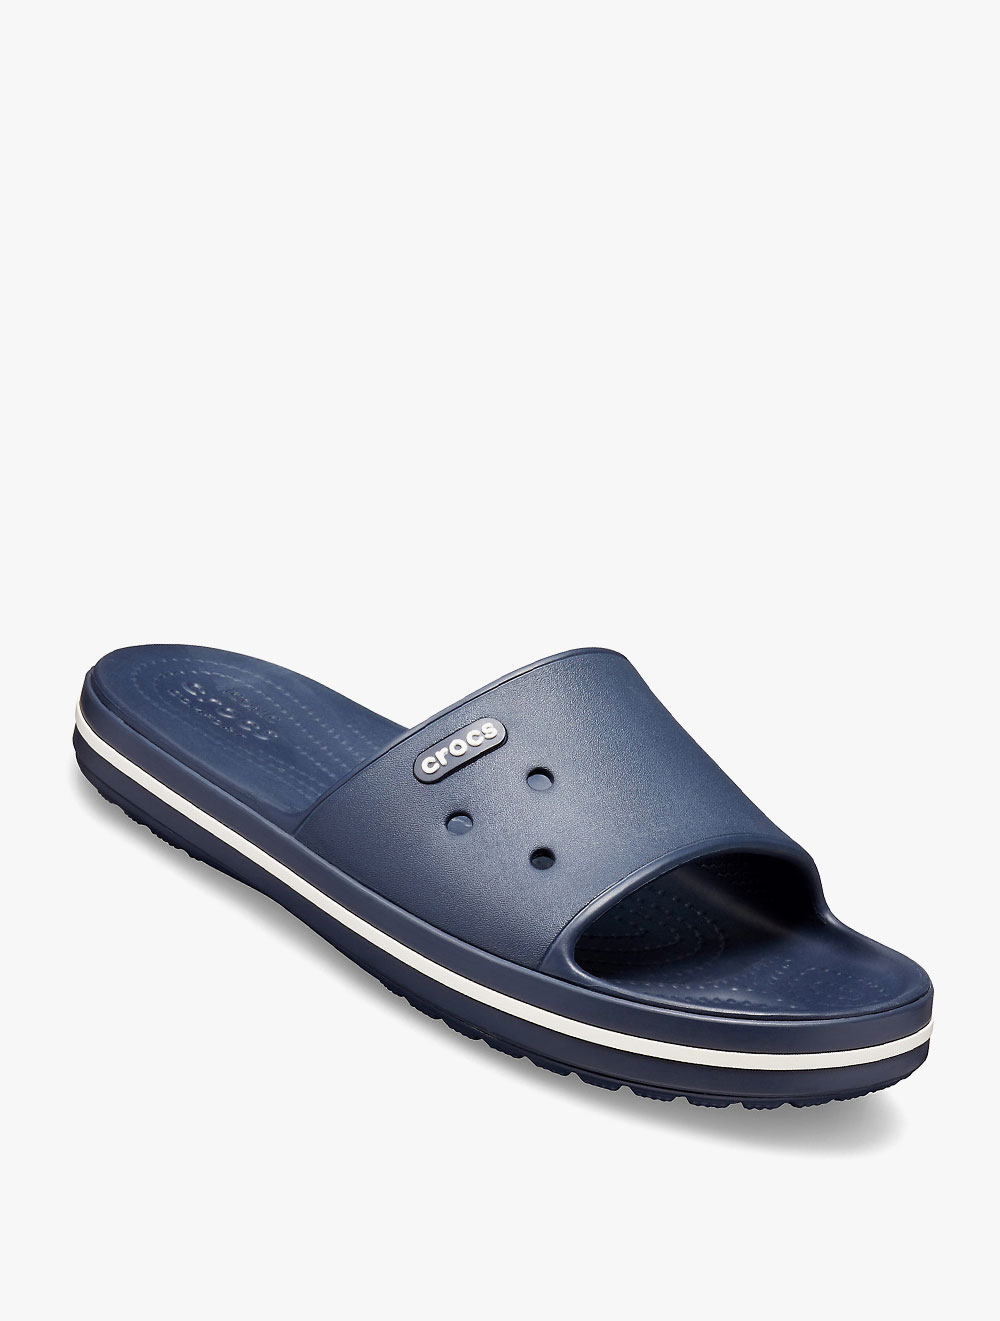 harga sandal crocs original